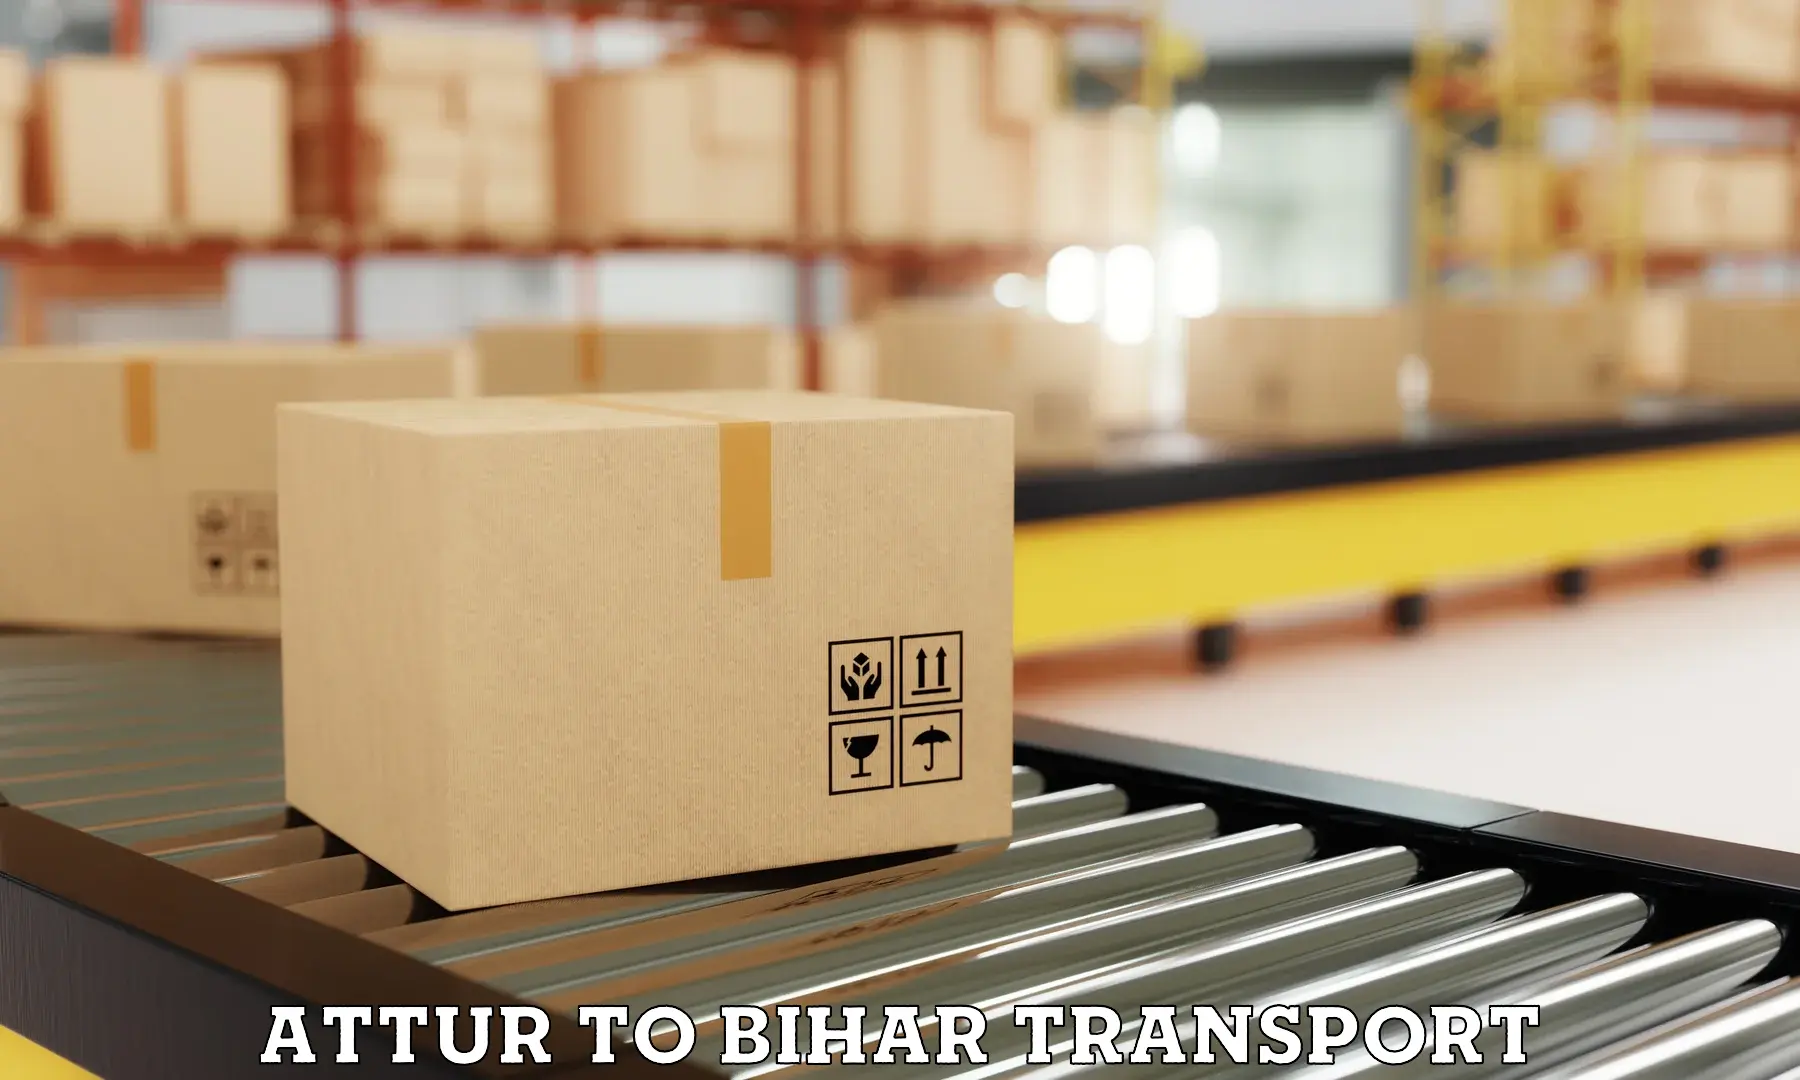 Bike transport service Attur to Bihar